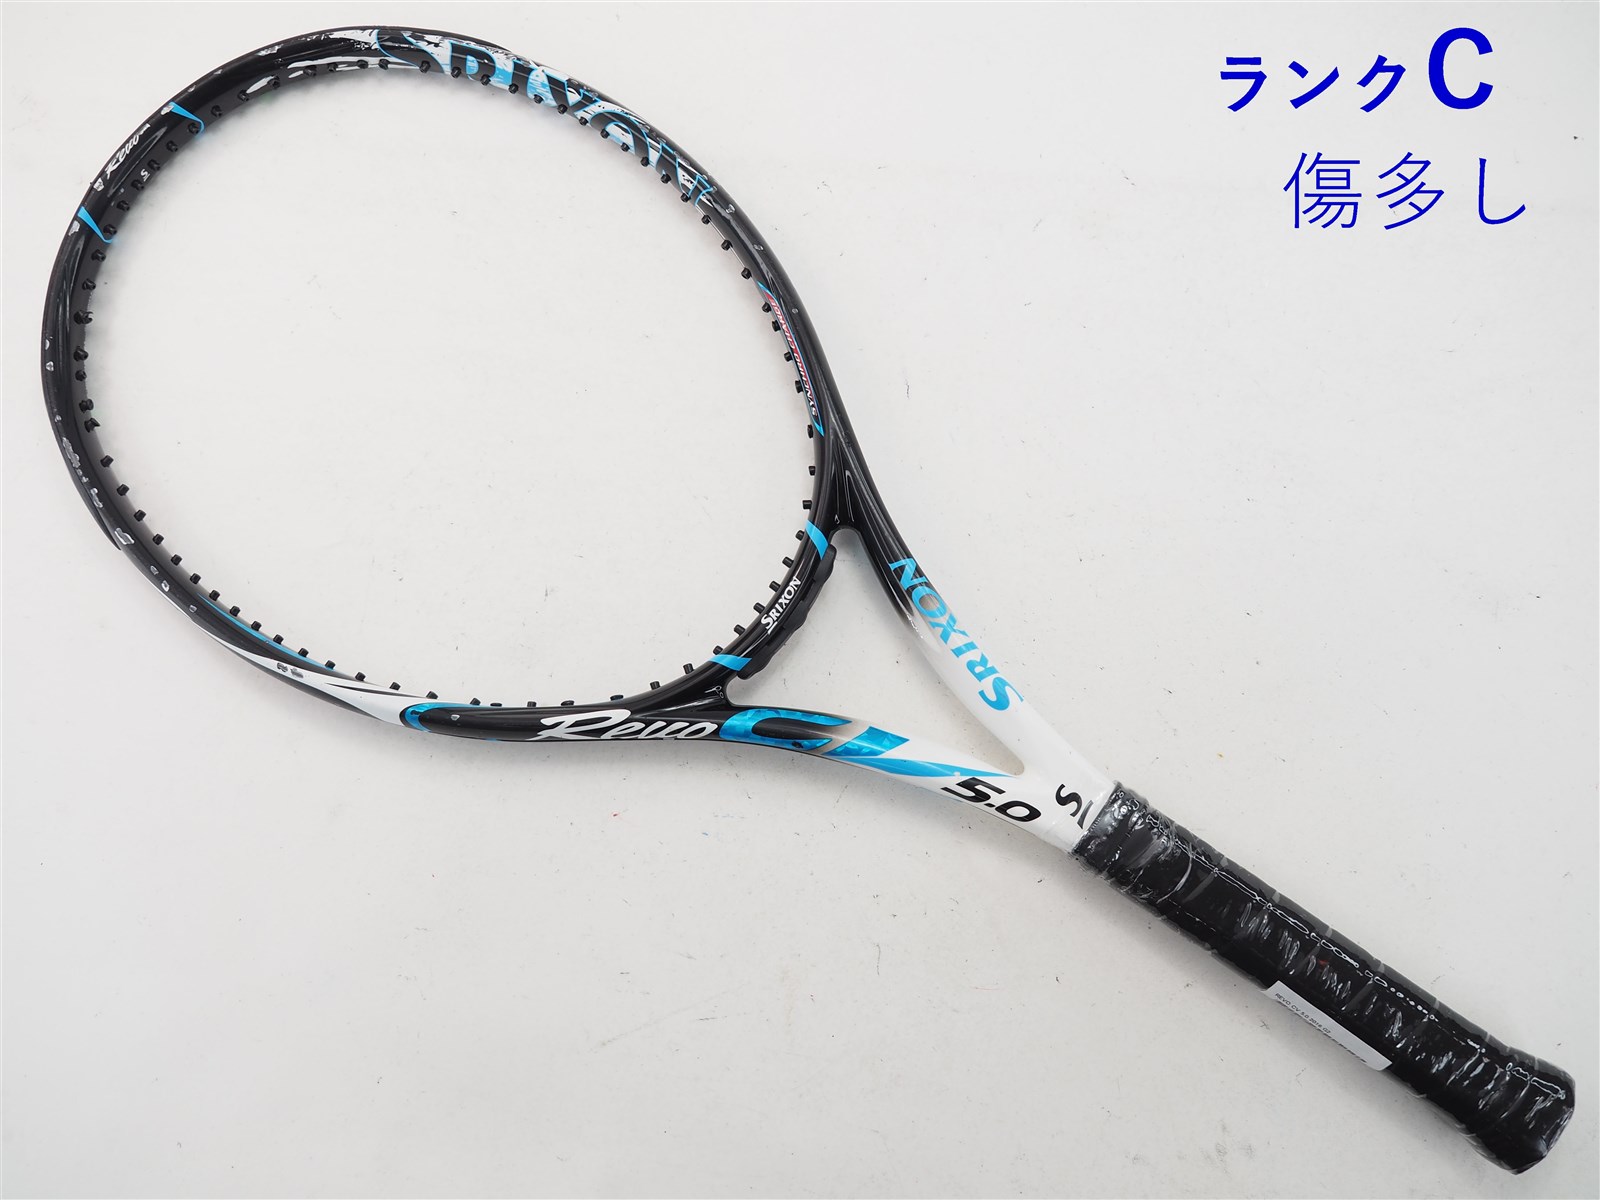 テニスラケット スリクソン レヴォ シーブイ 5.0 2018年モデル【一部